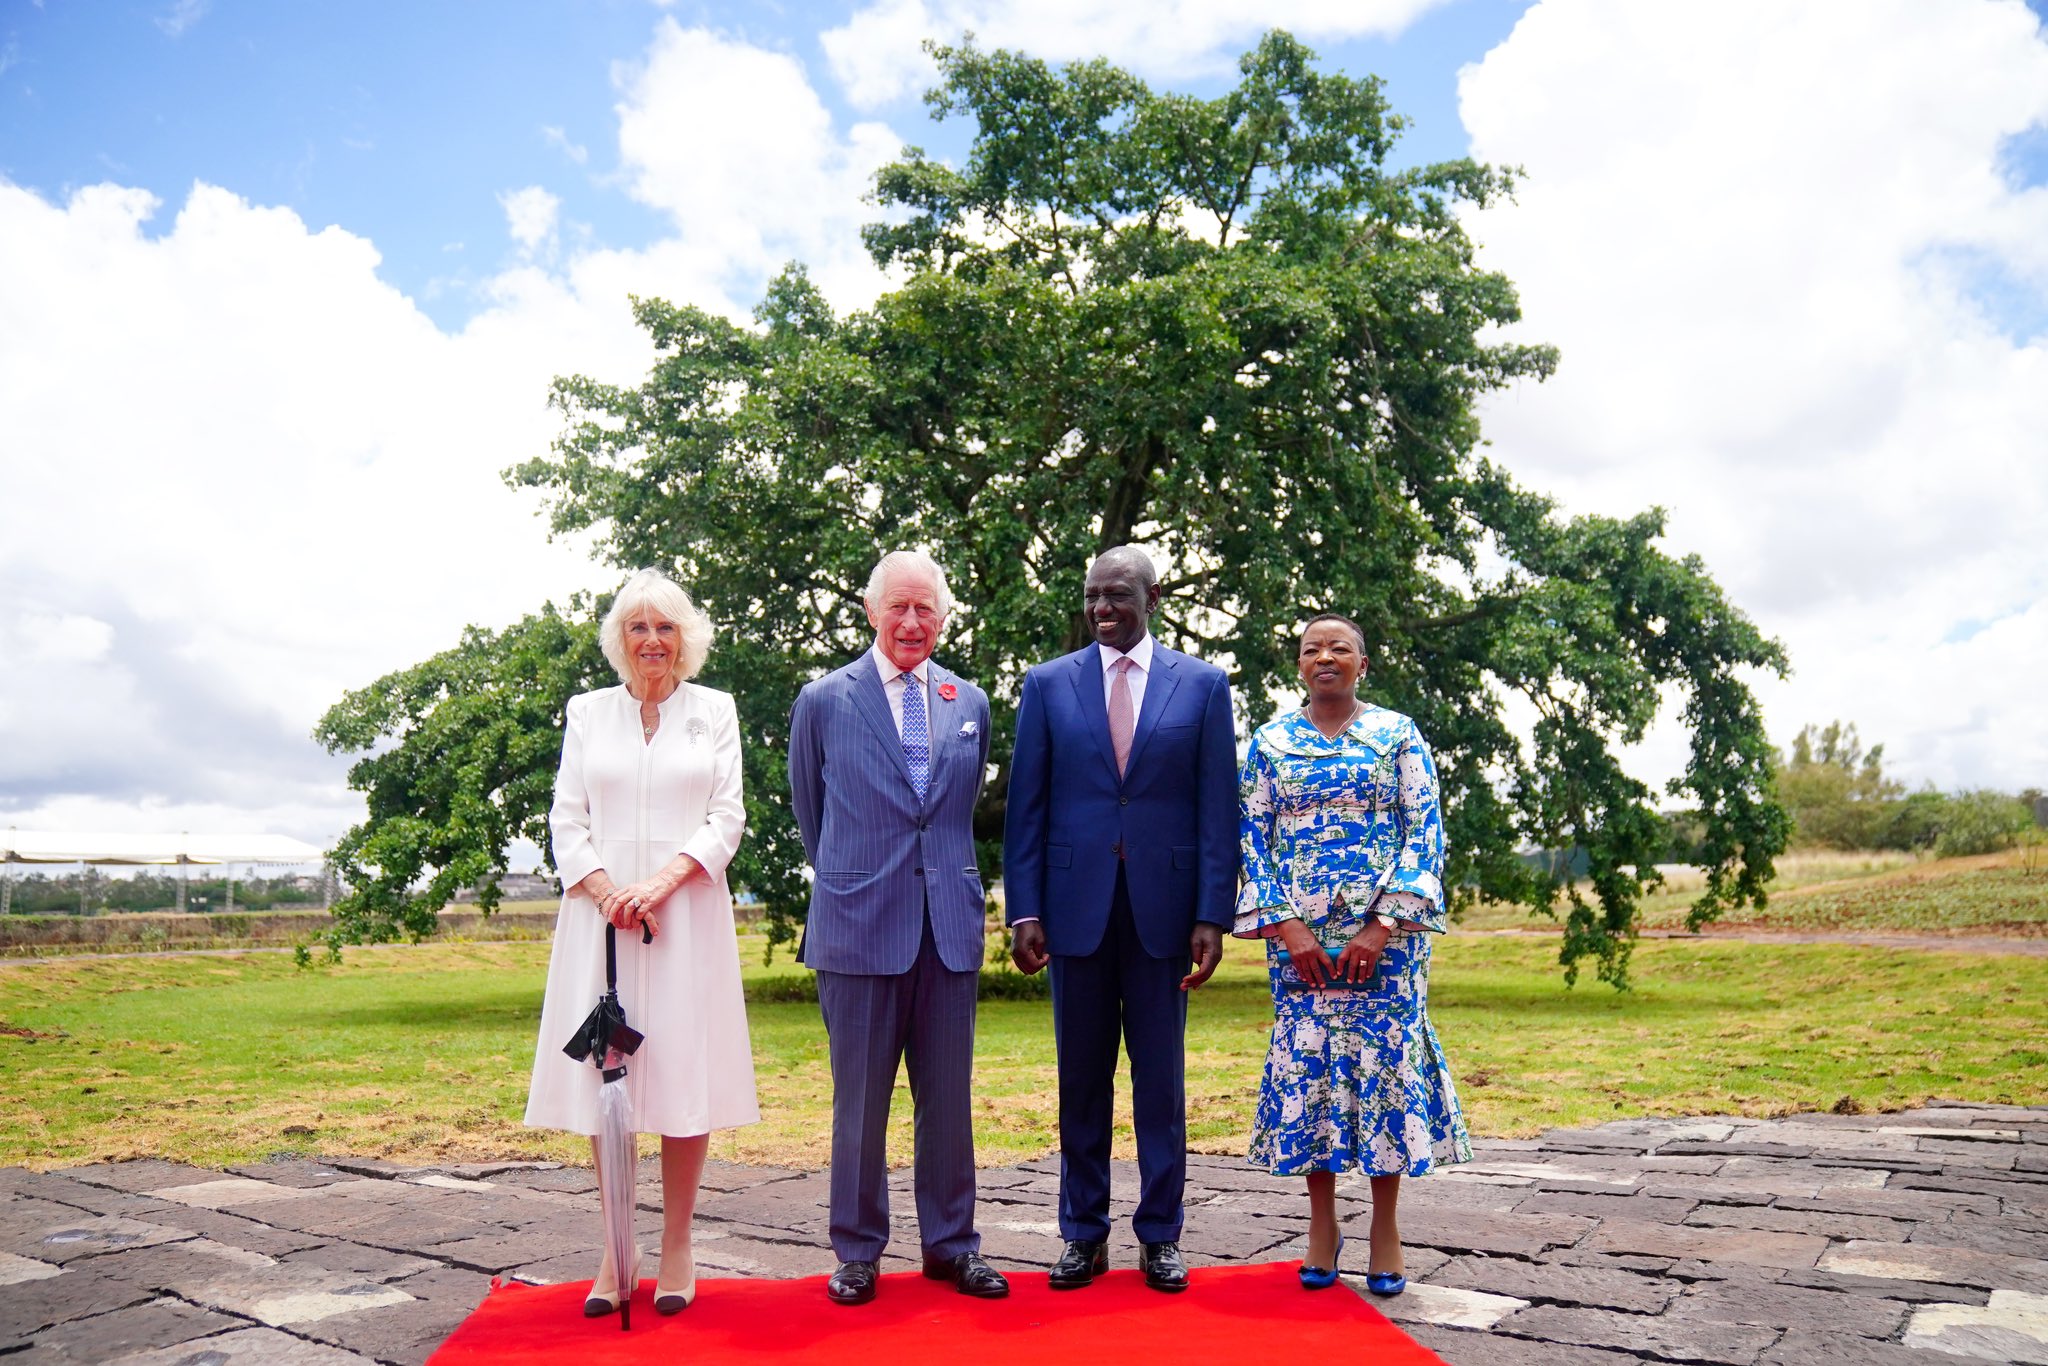 烏呼魯花園國家紀念碑和博物館是位於肯亞內羅畢的紀念公園和博物館，慶祝獨立12 週年時所種植的無花果樹。查爾斯國王此趟前來，在此與肯亞總統伉儷合影。（圖／翻攝自FB@King CharlesIII）